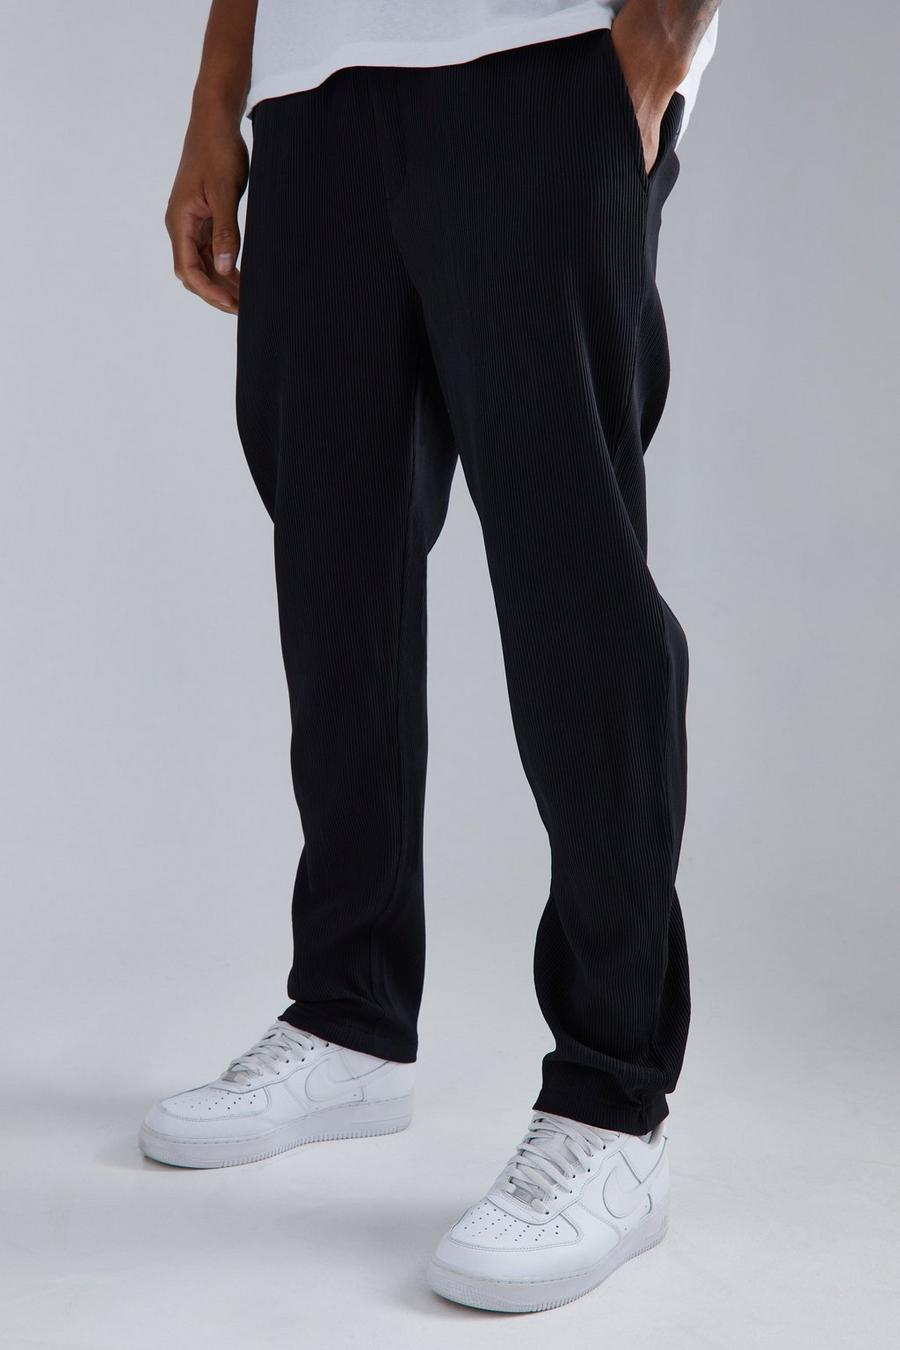 Pantaloni affusolati Tall con pieghe e vita elasticizzata, Black nero